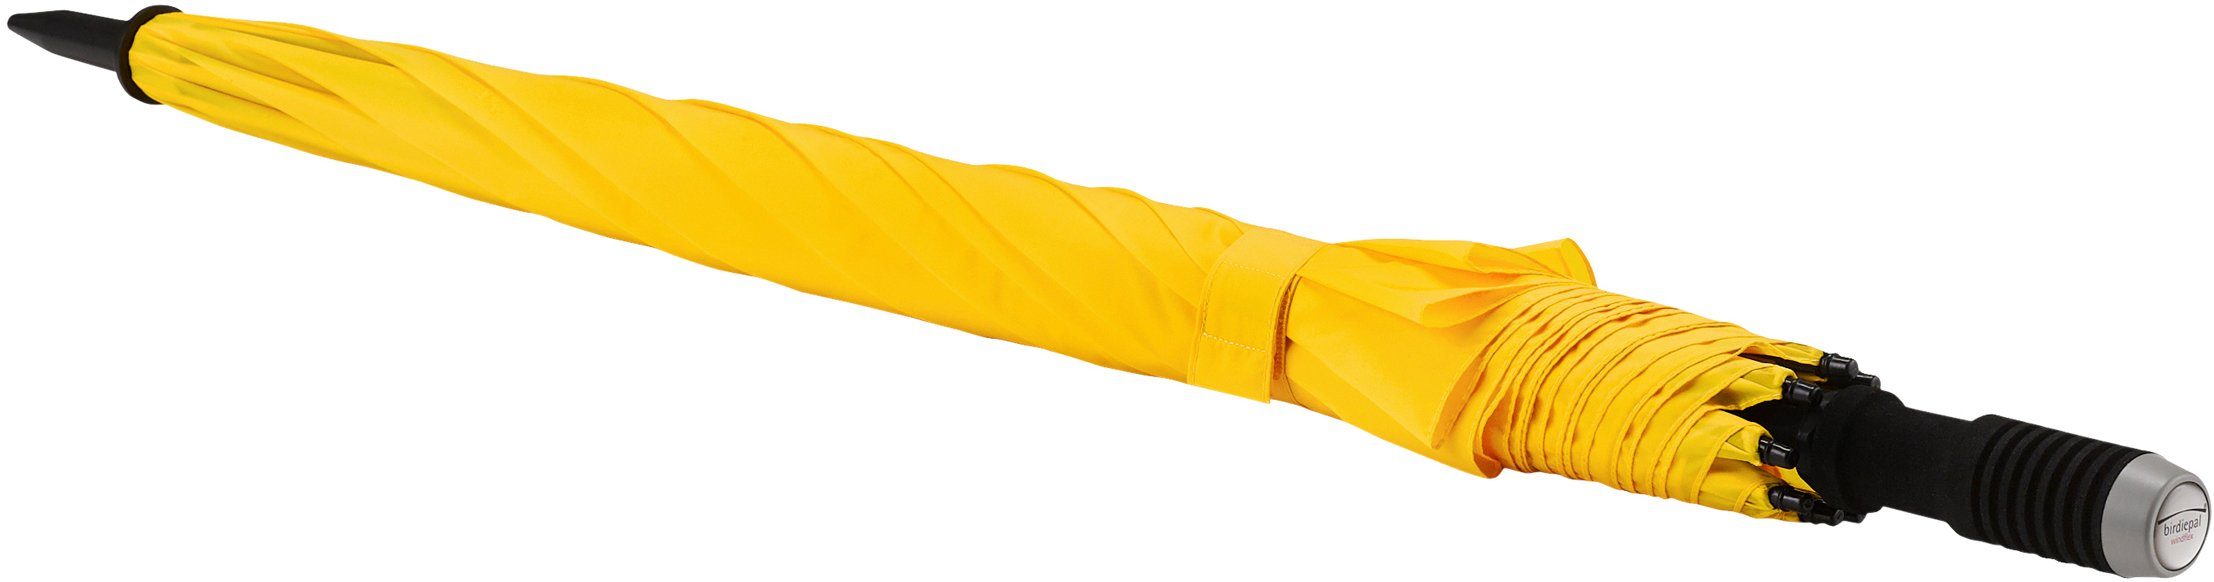 EuroSCHIRM® Partnerschirm windflex, großem gelb extra birdiepal® Dach mit